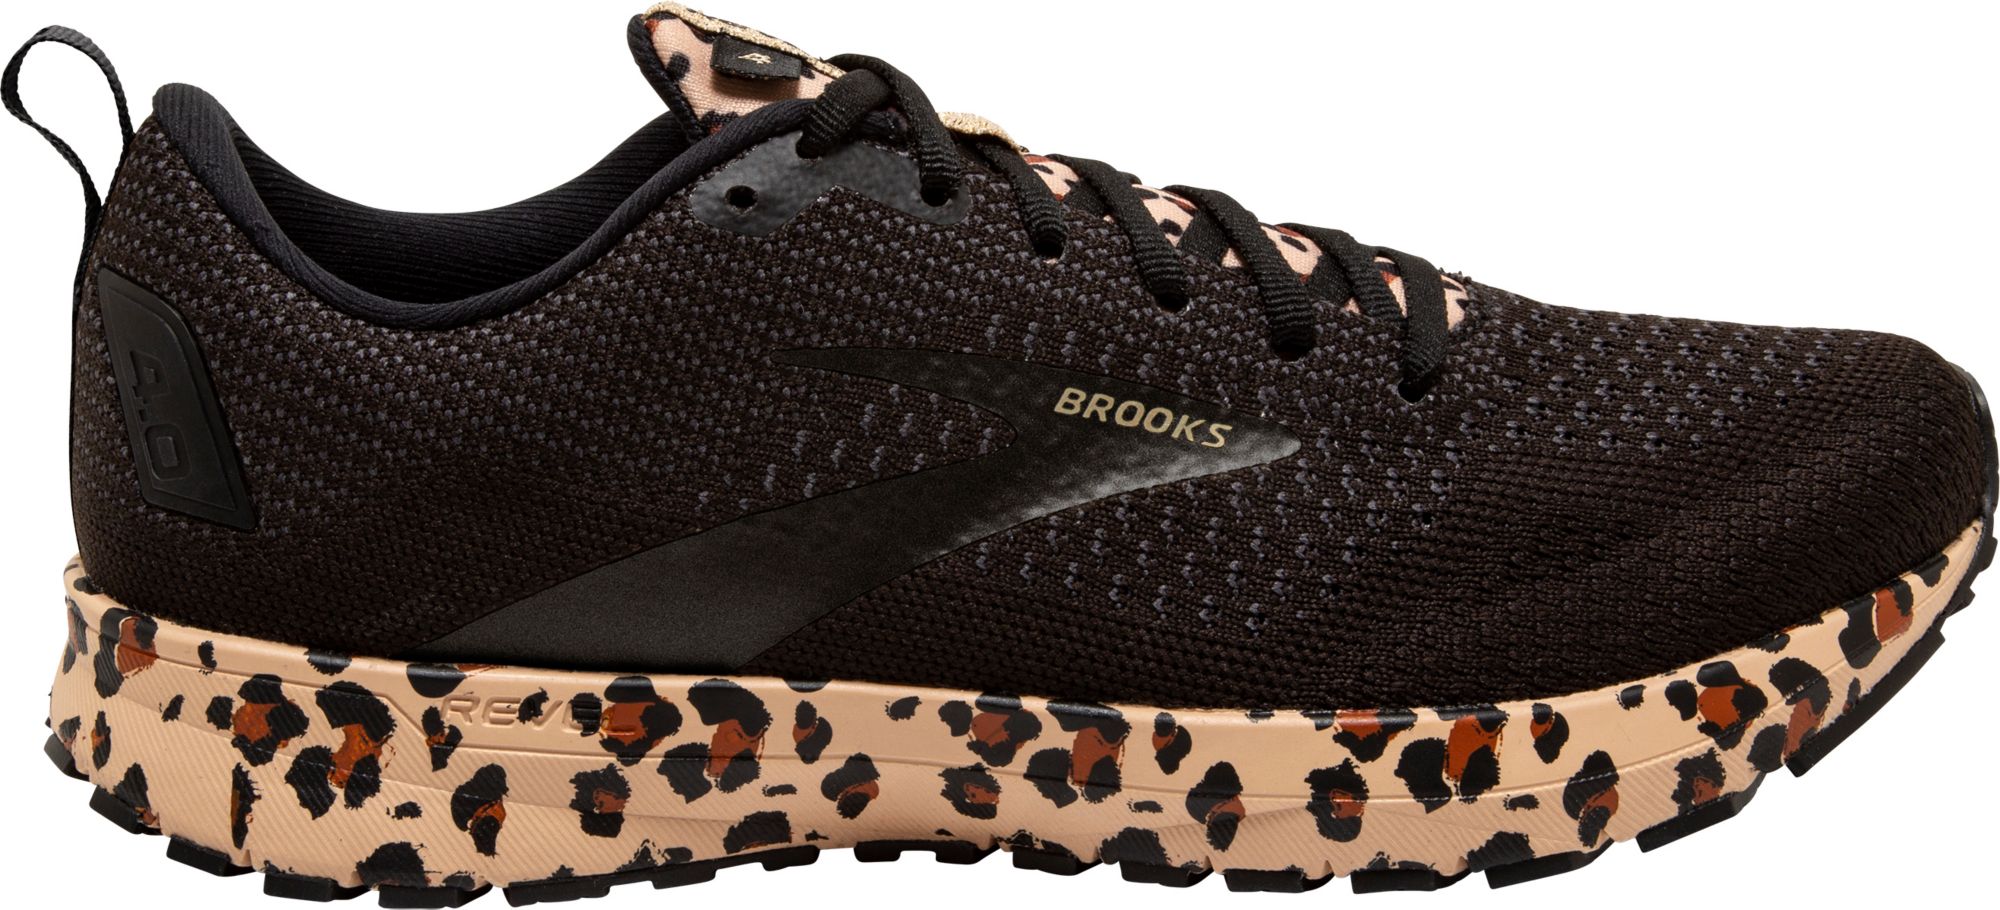 brooks sneakers brown